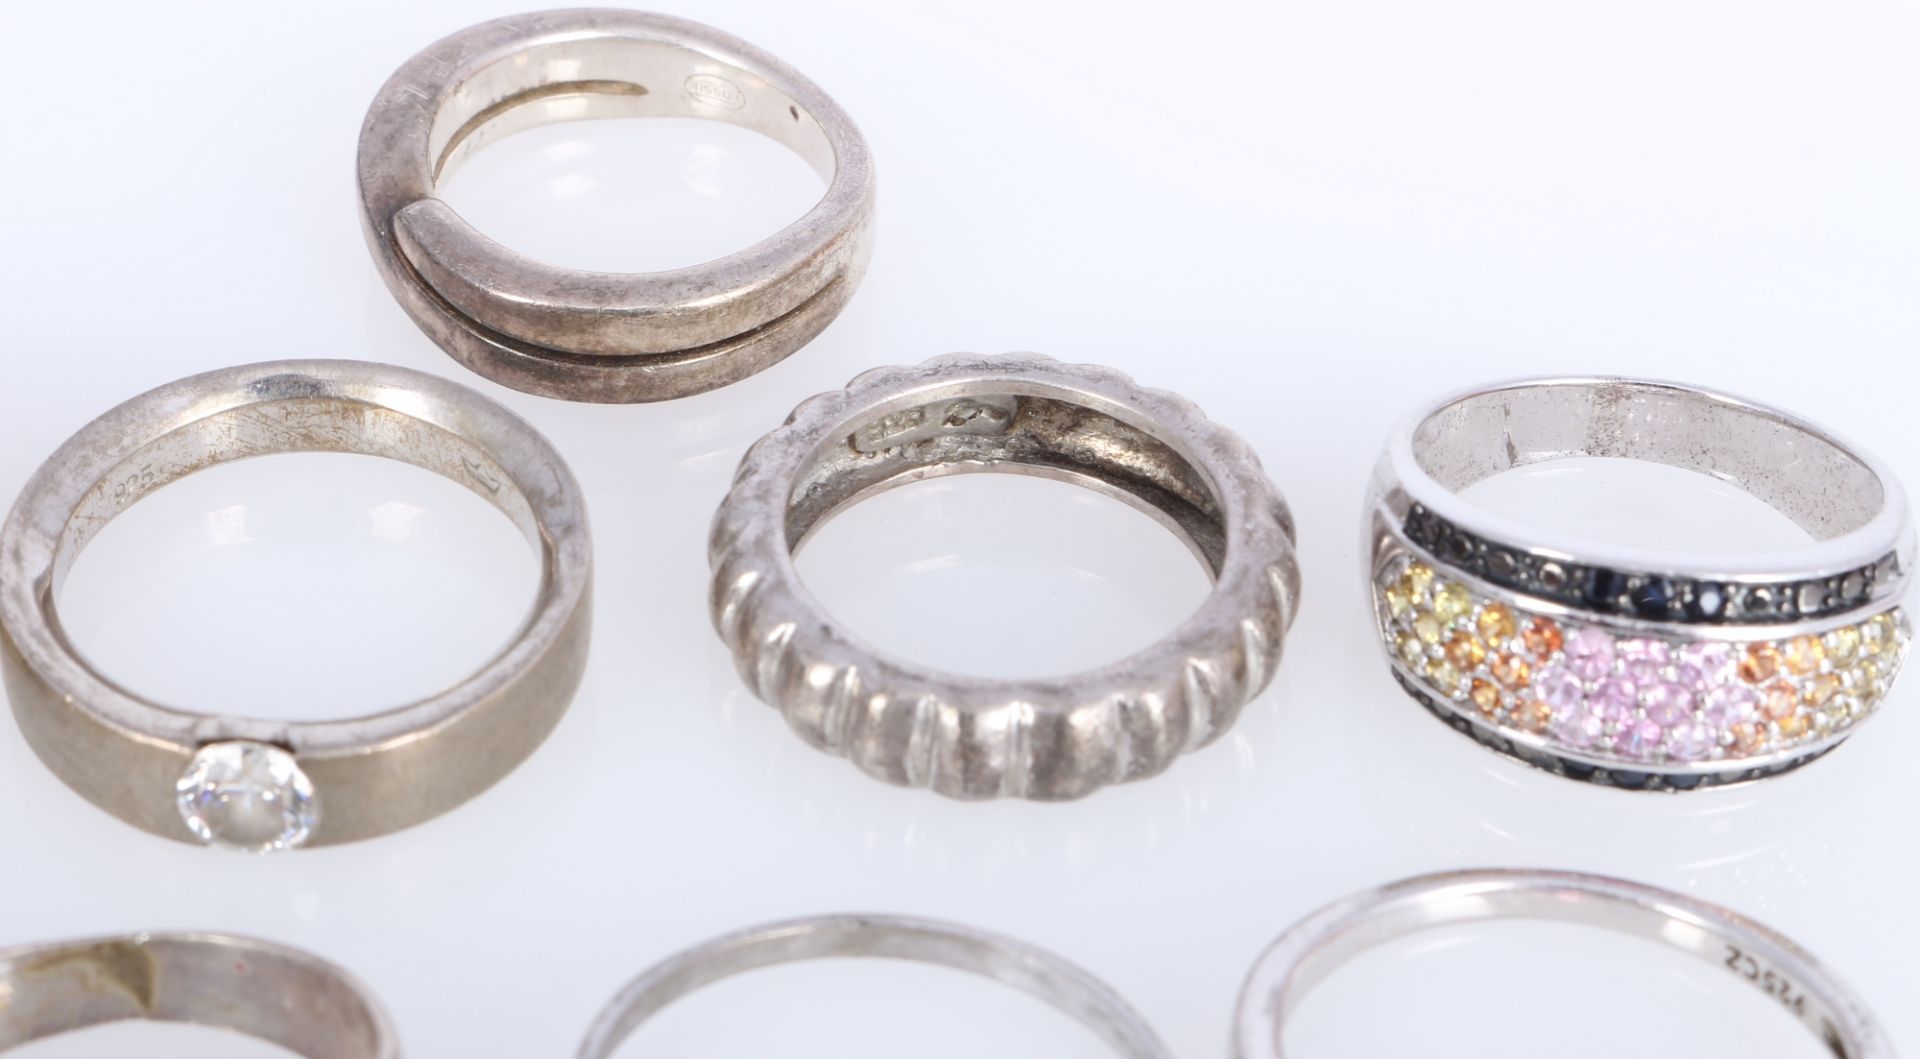 20 Silberringe 800-925 Silber, silver rings, - Bild 5 aus 6